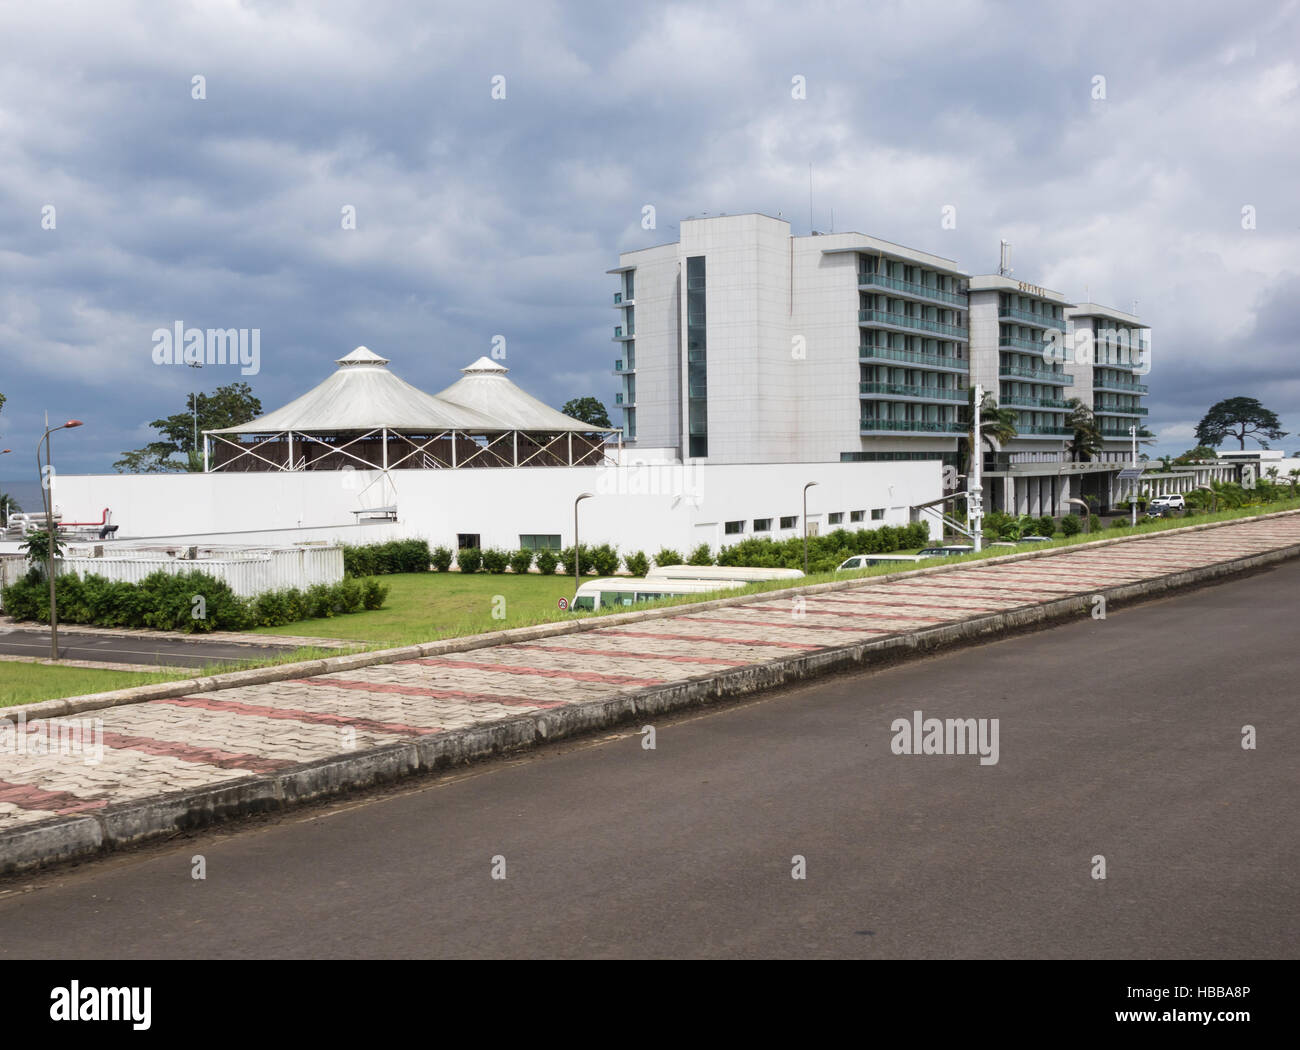 Sofitel hotel in Malabo, Equatorial Guinea Stock Photo